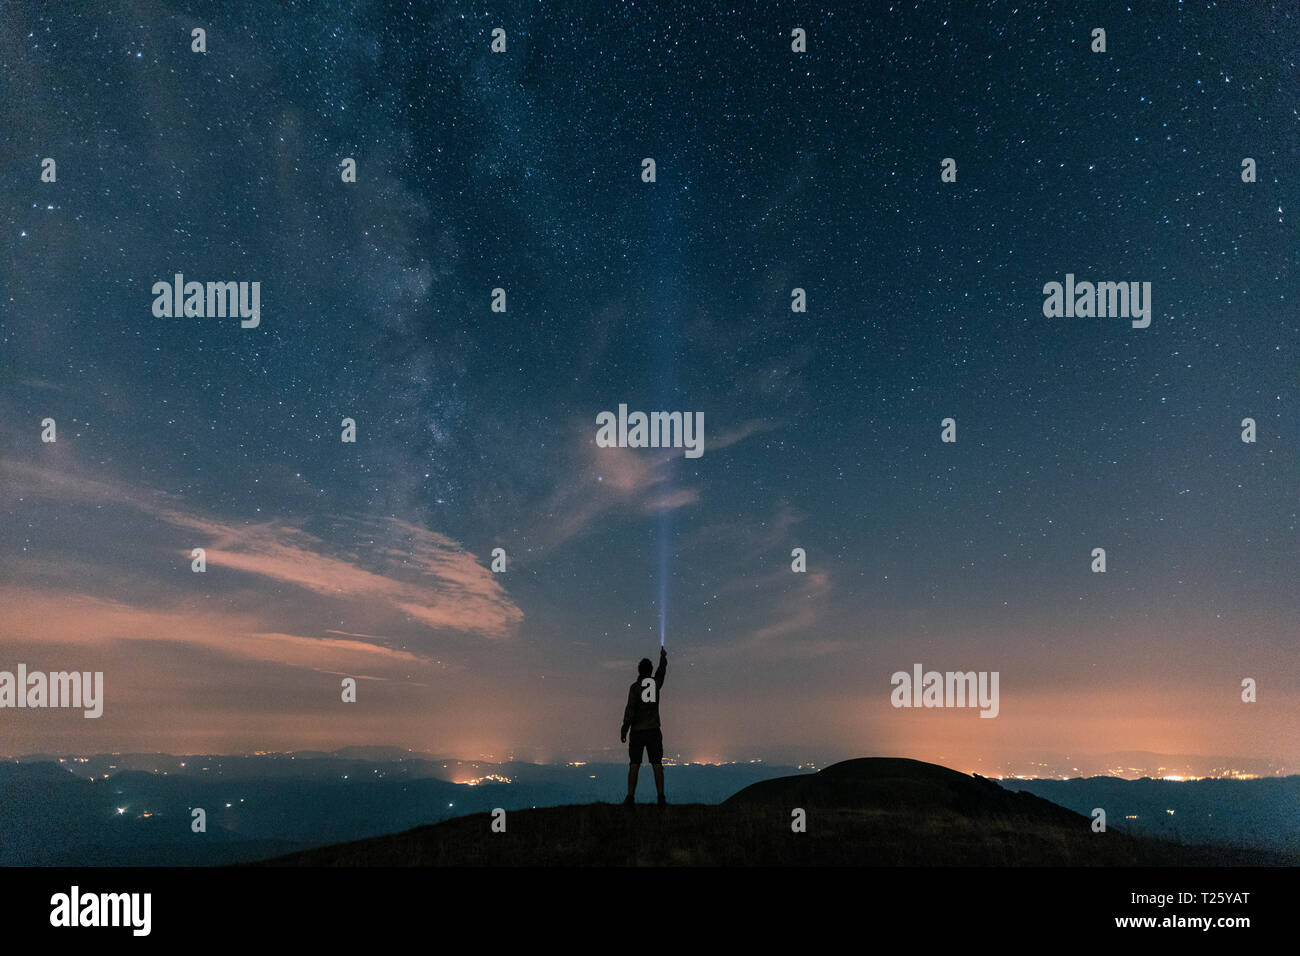 L'Italia, Monte Nerone, silhouette di un uomo con torcia sotto il cielo notturno con le stelle e la via lattea Foto Stock